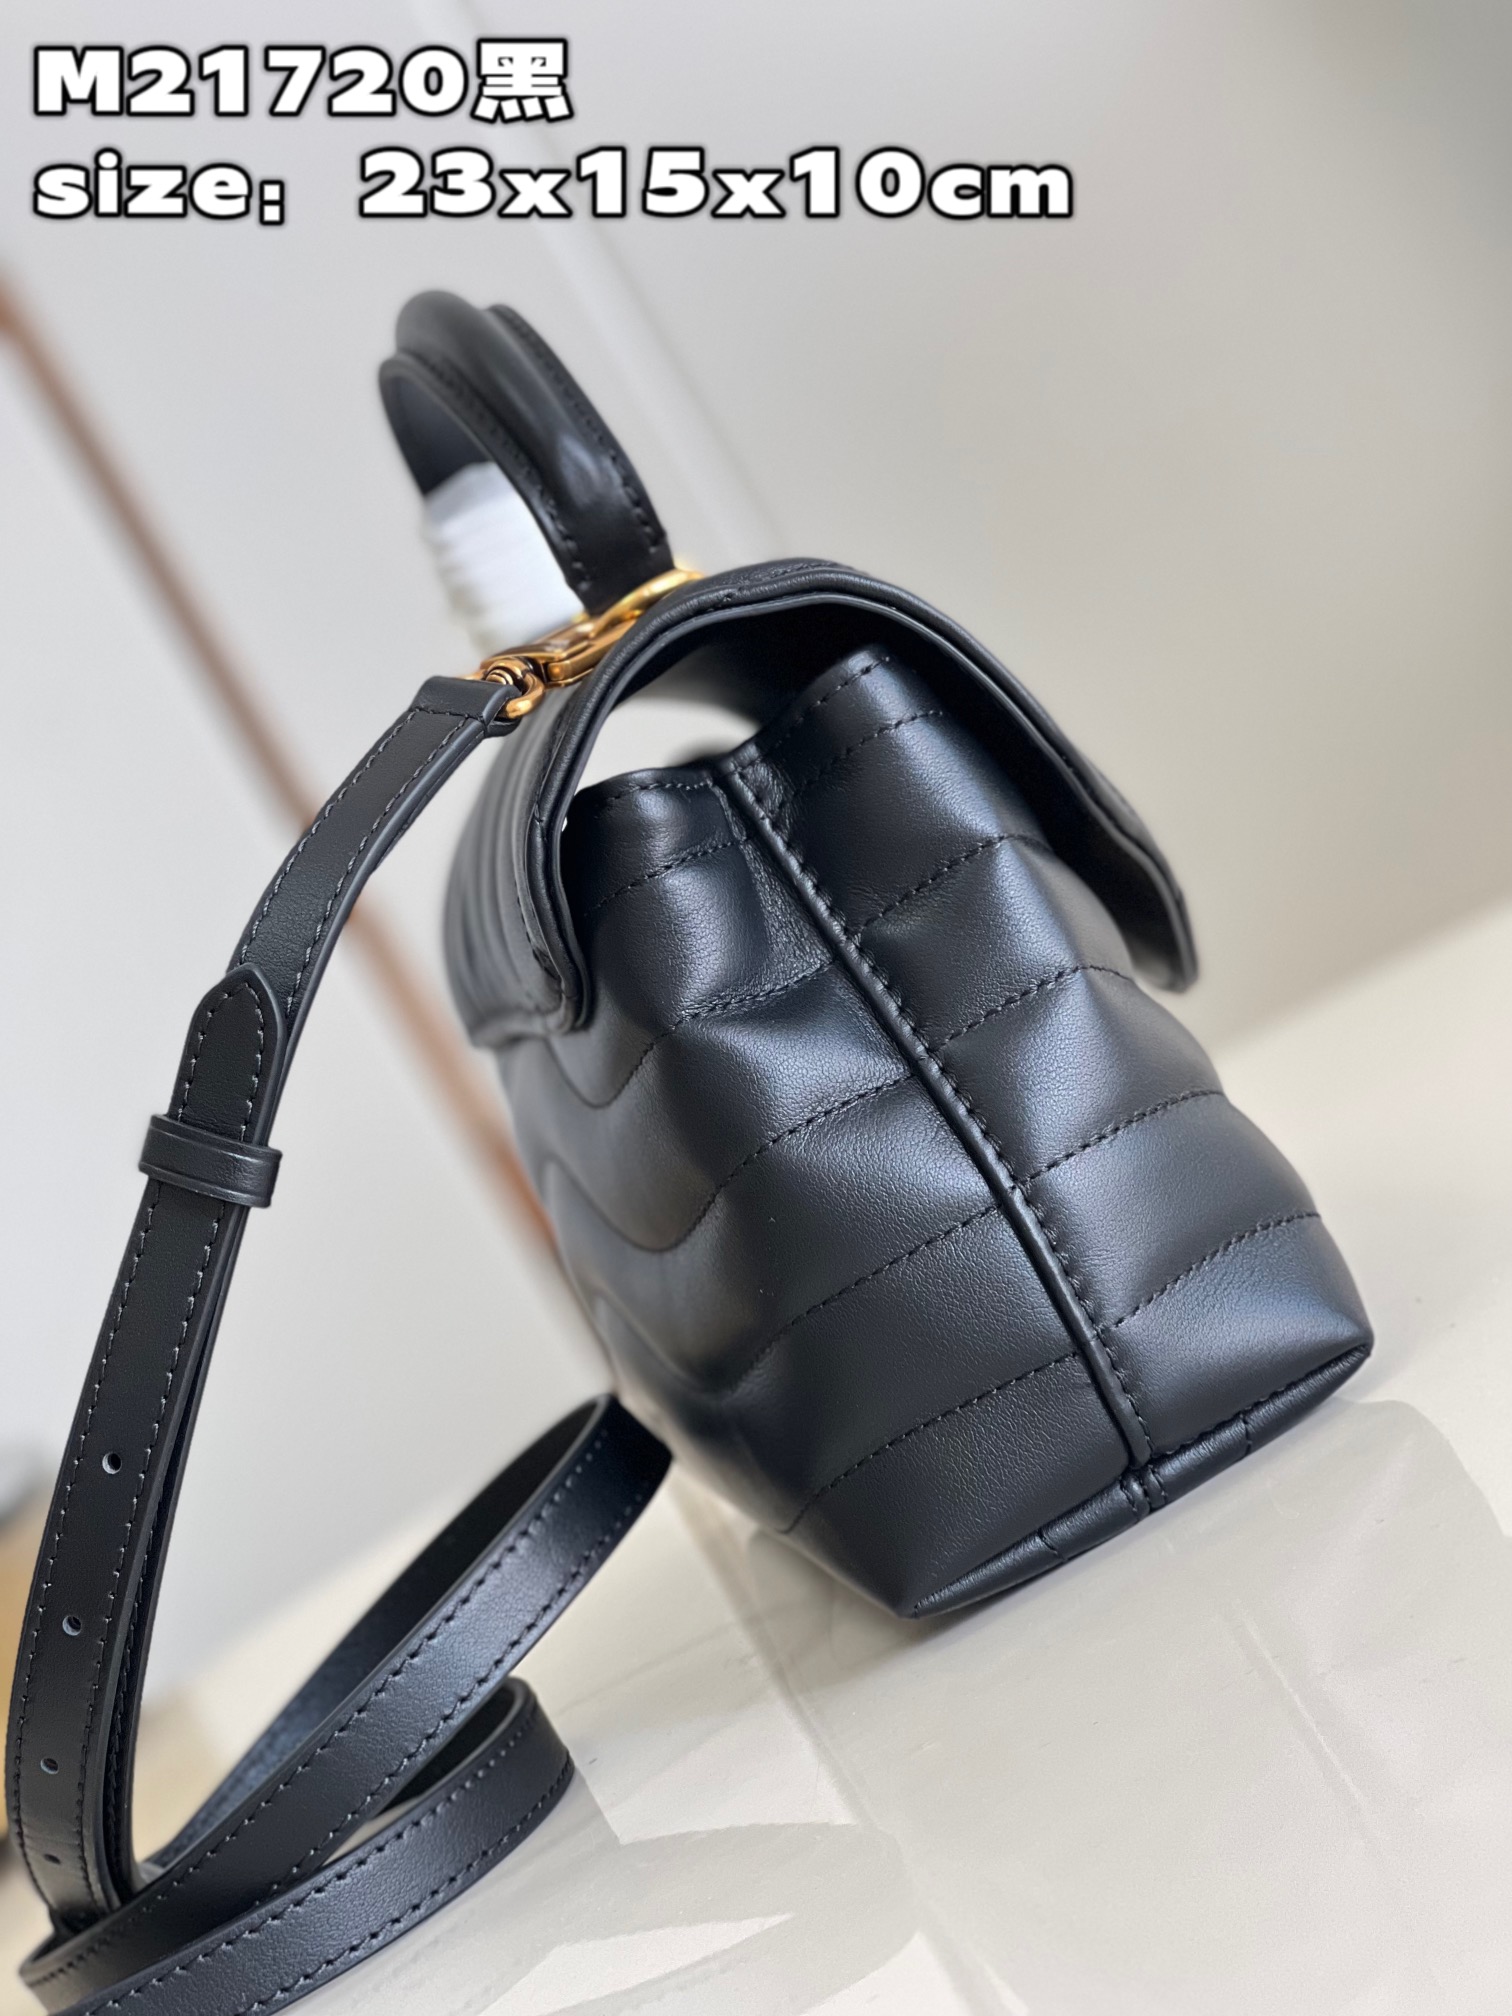 顶级原单M21720黑此款HoldMe手袋是路易威登旗下标志性的NewWave绗缝皮具系列的新品造型精致